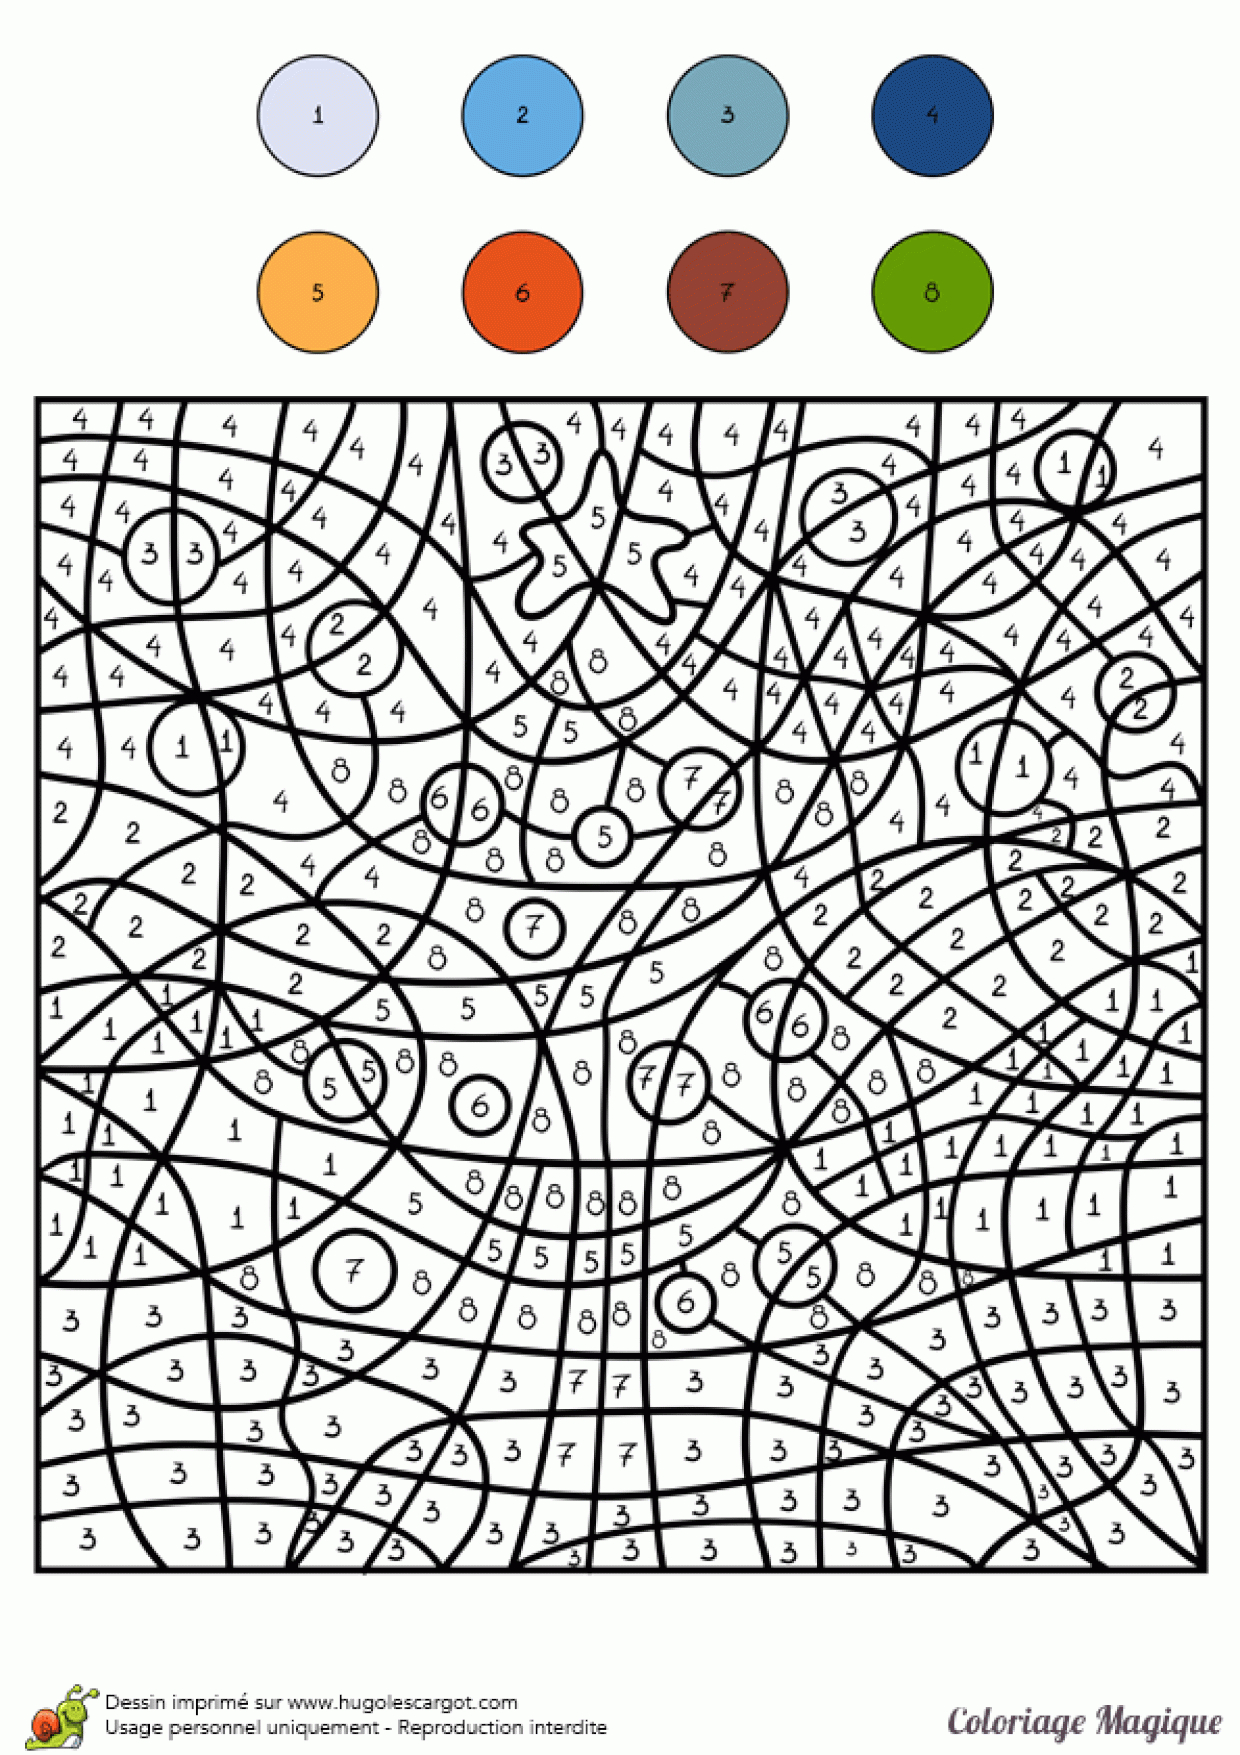 Coloriage Magique Niveau Cm2 D'un Sapin De NoÃ«l pour Coloriage CodÃ©